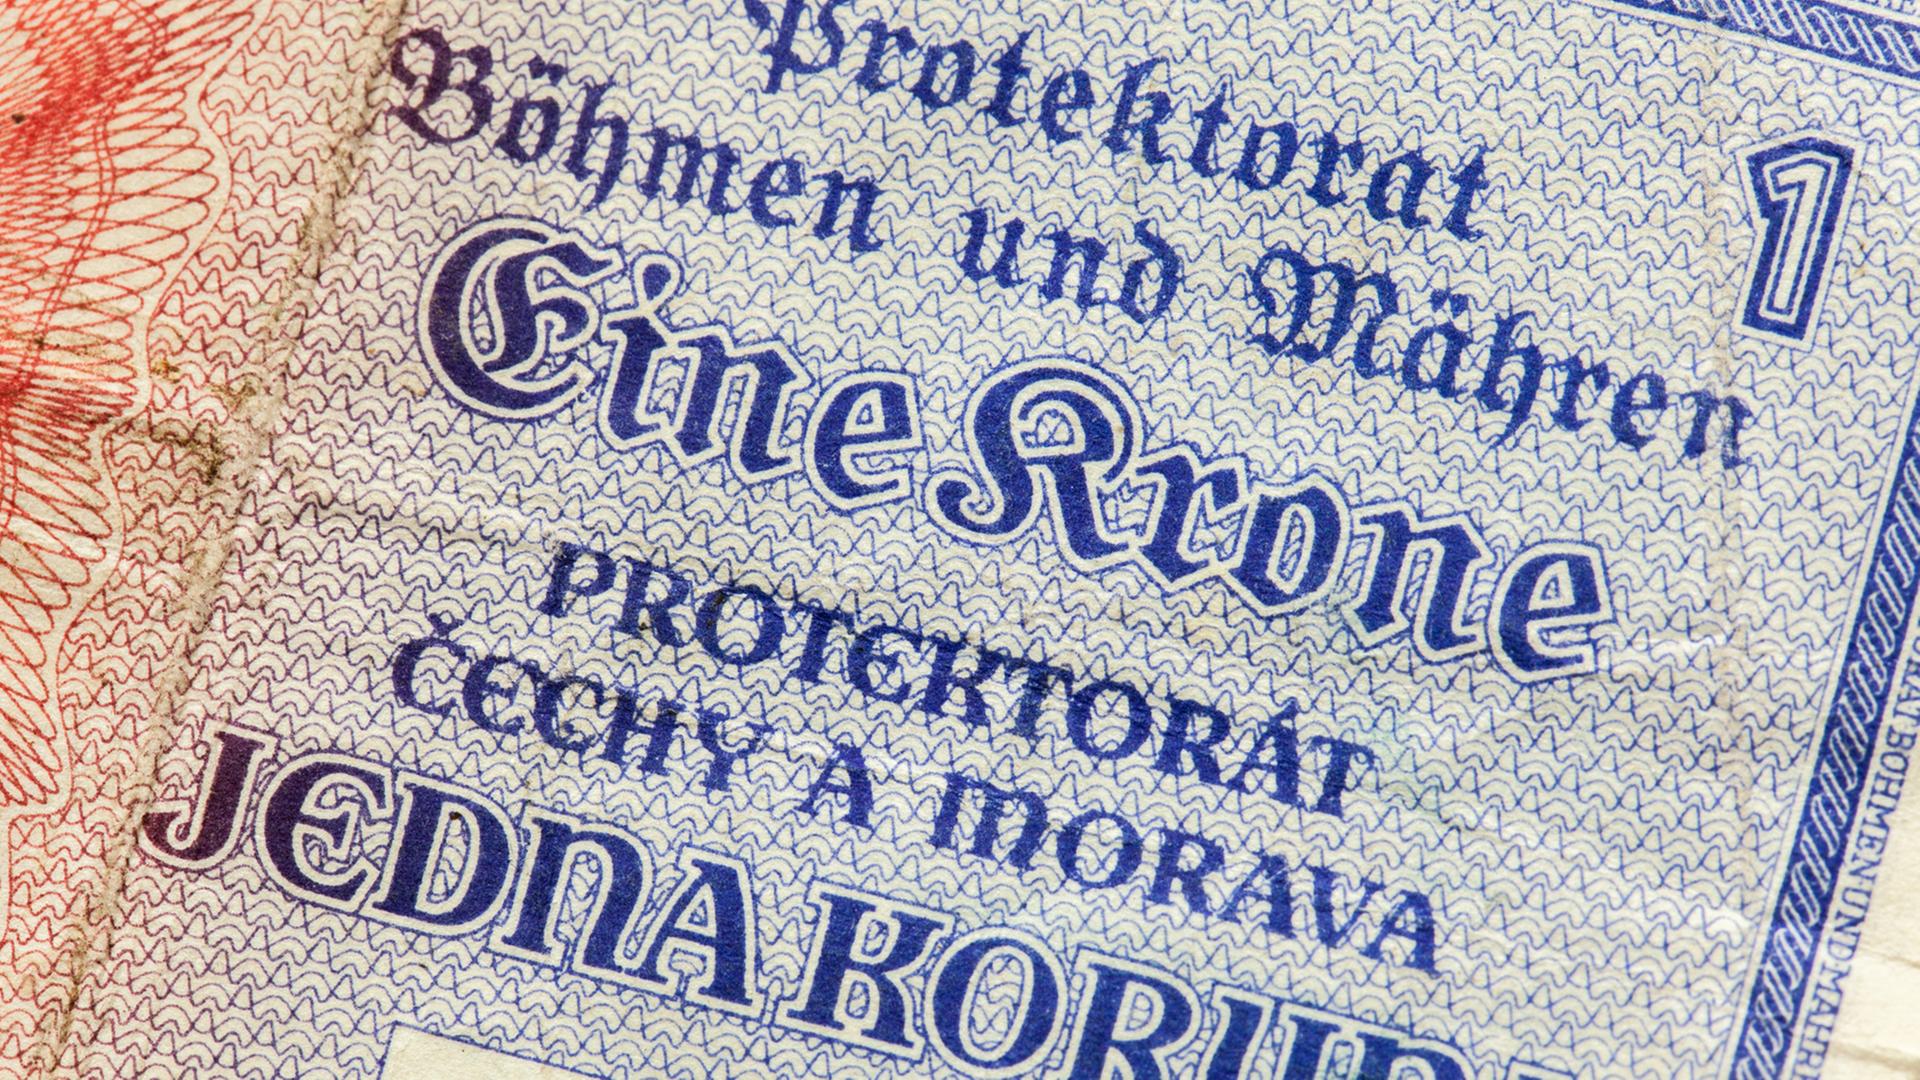 Während der Besatzung gaben die Nazis im "Protektorat Böhmen und Mähren" eine eigene Währung heraus.